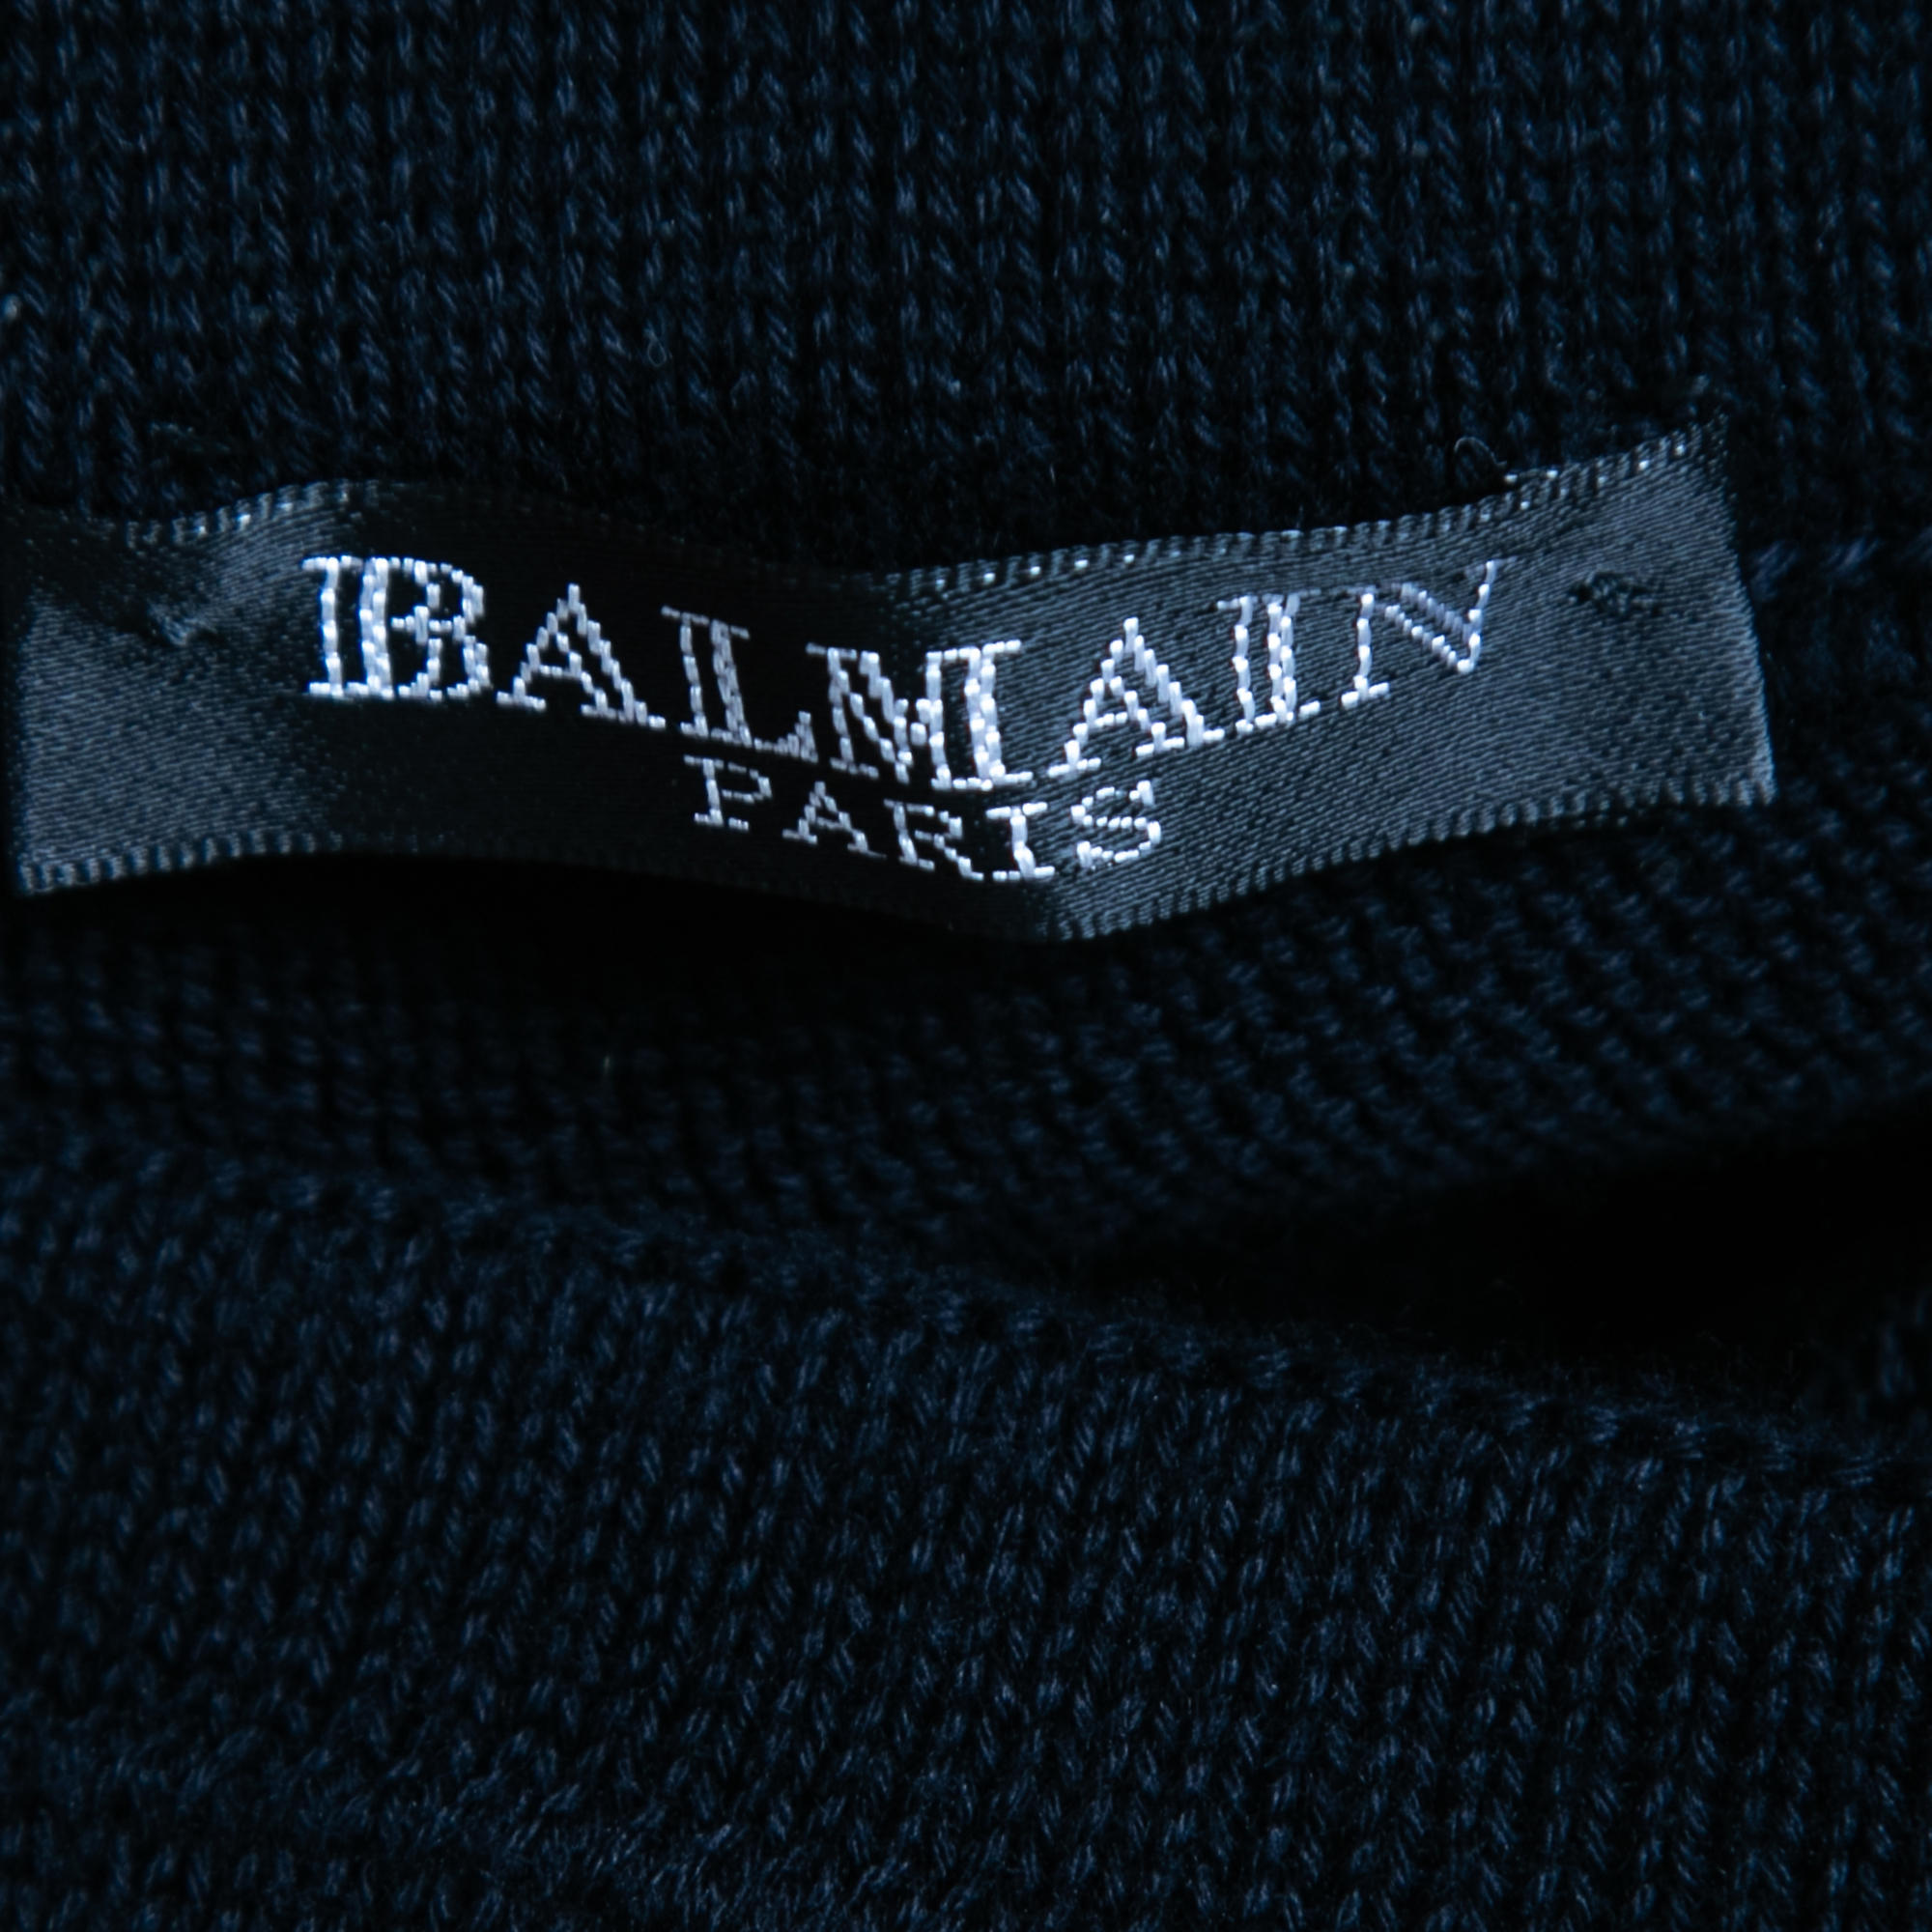 Balmain Navy Blue Cotton Side Stripe Detail Drawstring Yoga Pants XS